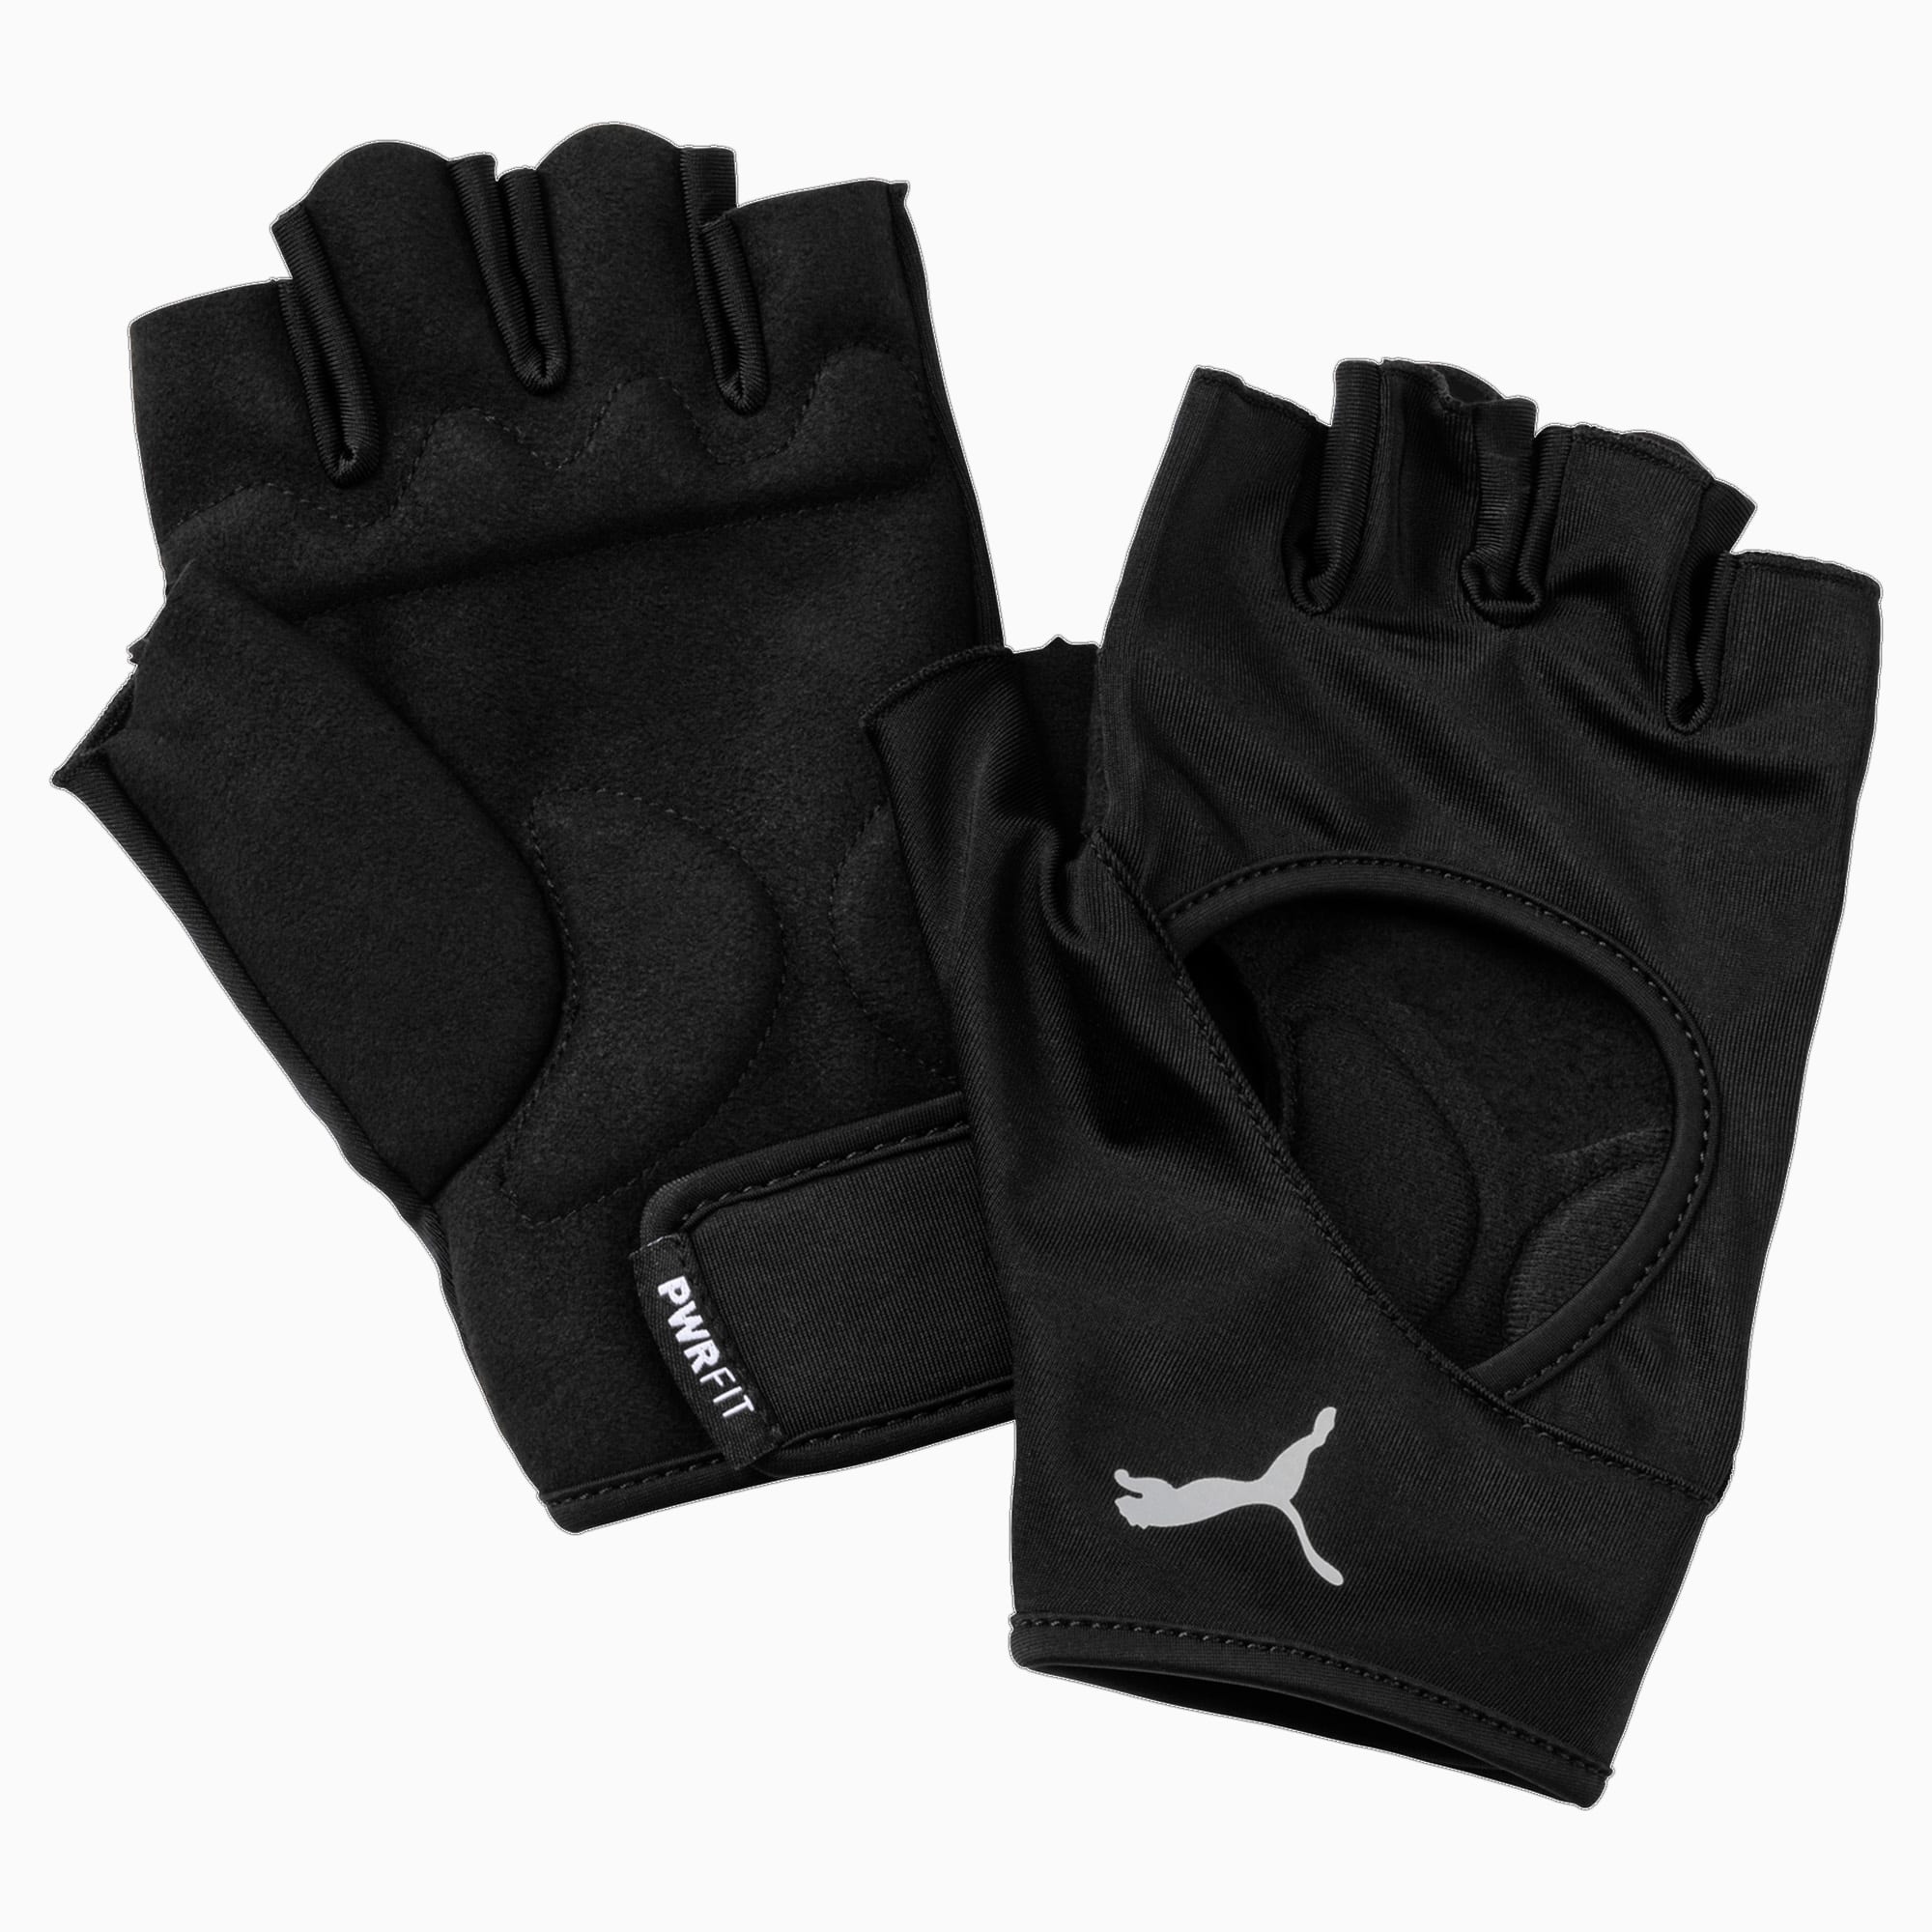 PUMA Training Essential Handschuhe Für Herren, Schwarz/Grau, Größe: M, Accessoires